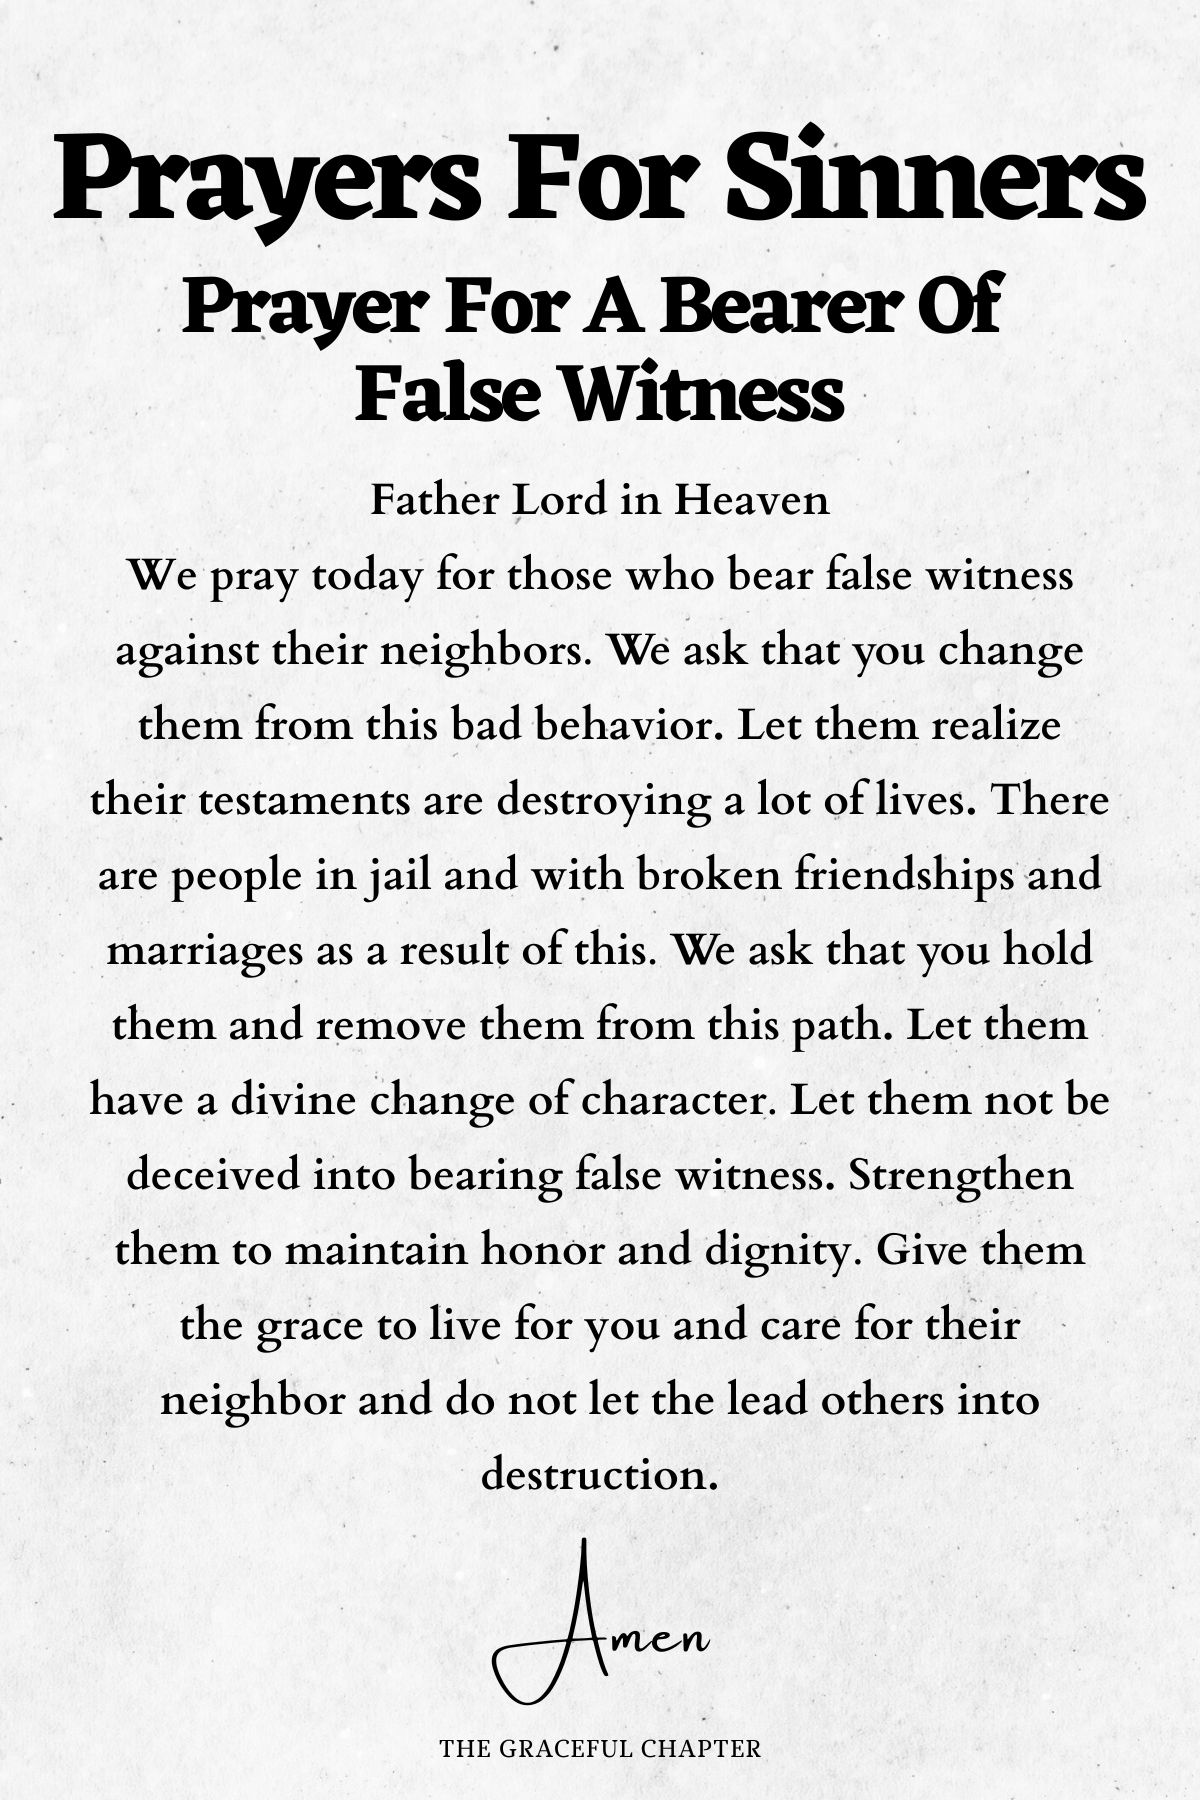 Prayer for a bearer of false witness